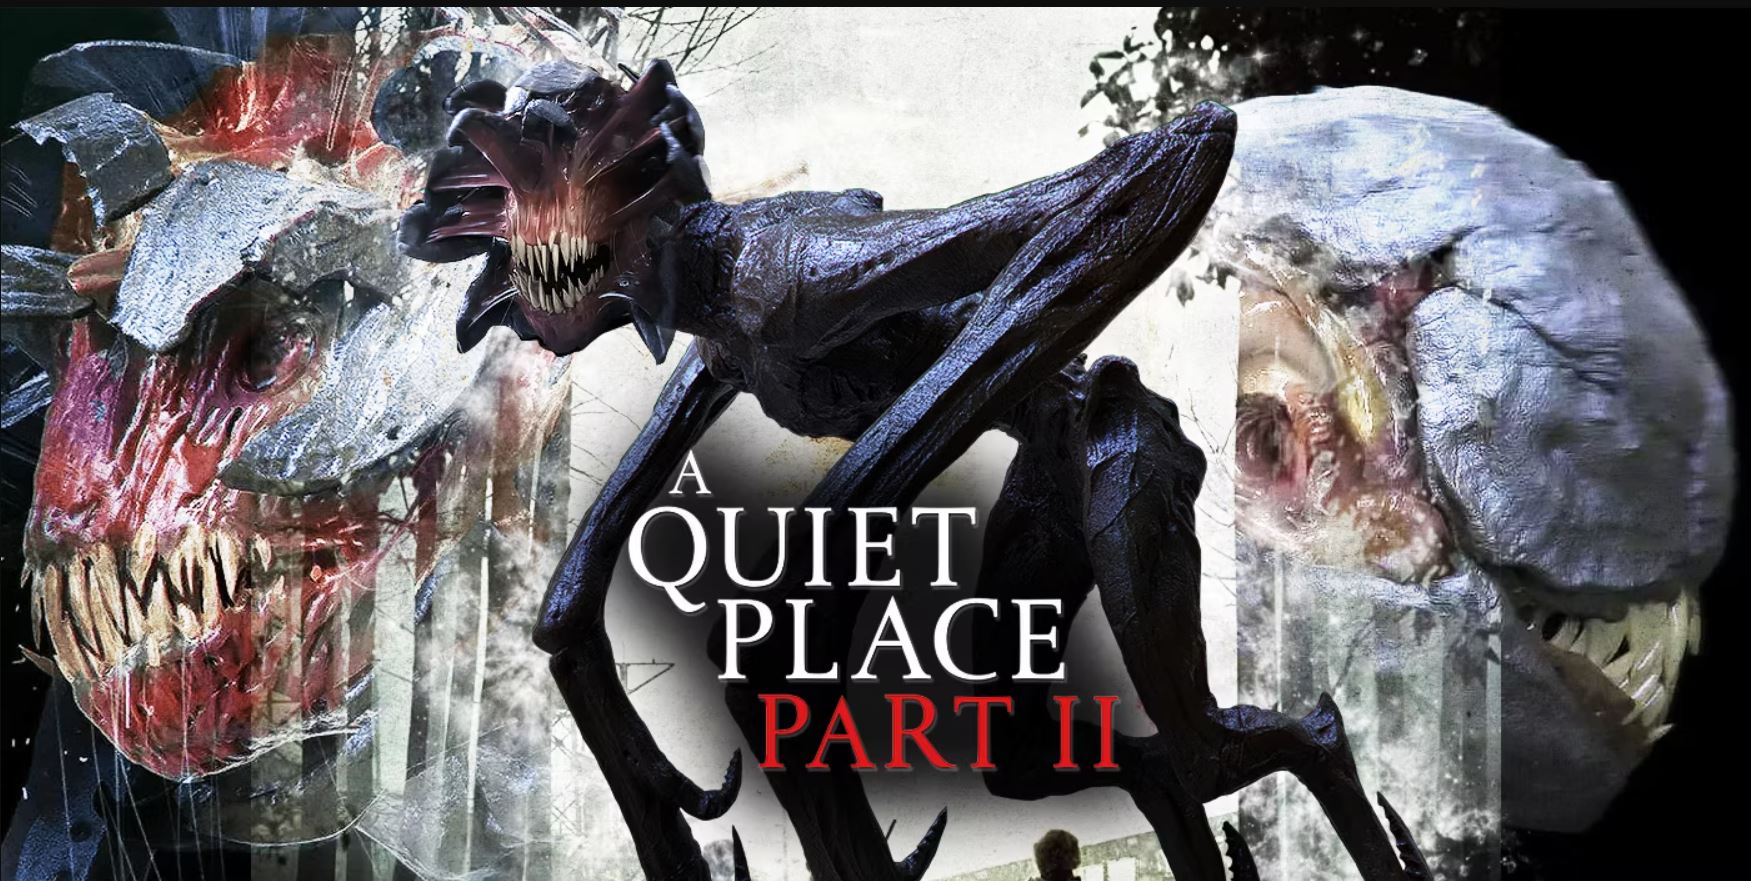 مشاهدة فلم الرعب مكان هادئ الجزء الثاني A Quiet Place 2 كامل ومترجم HD